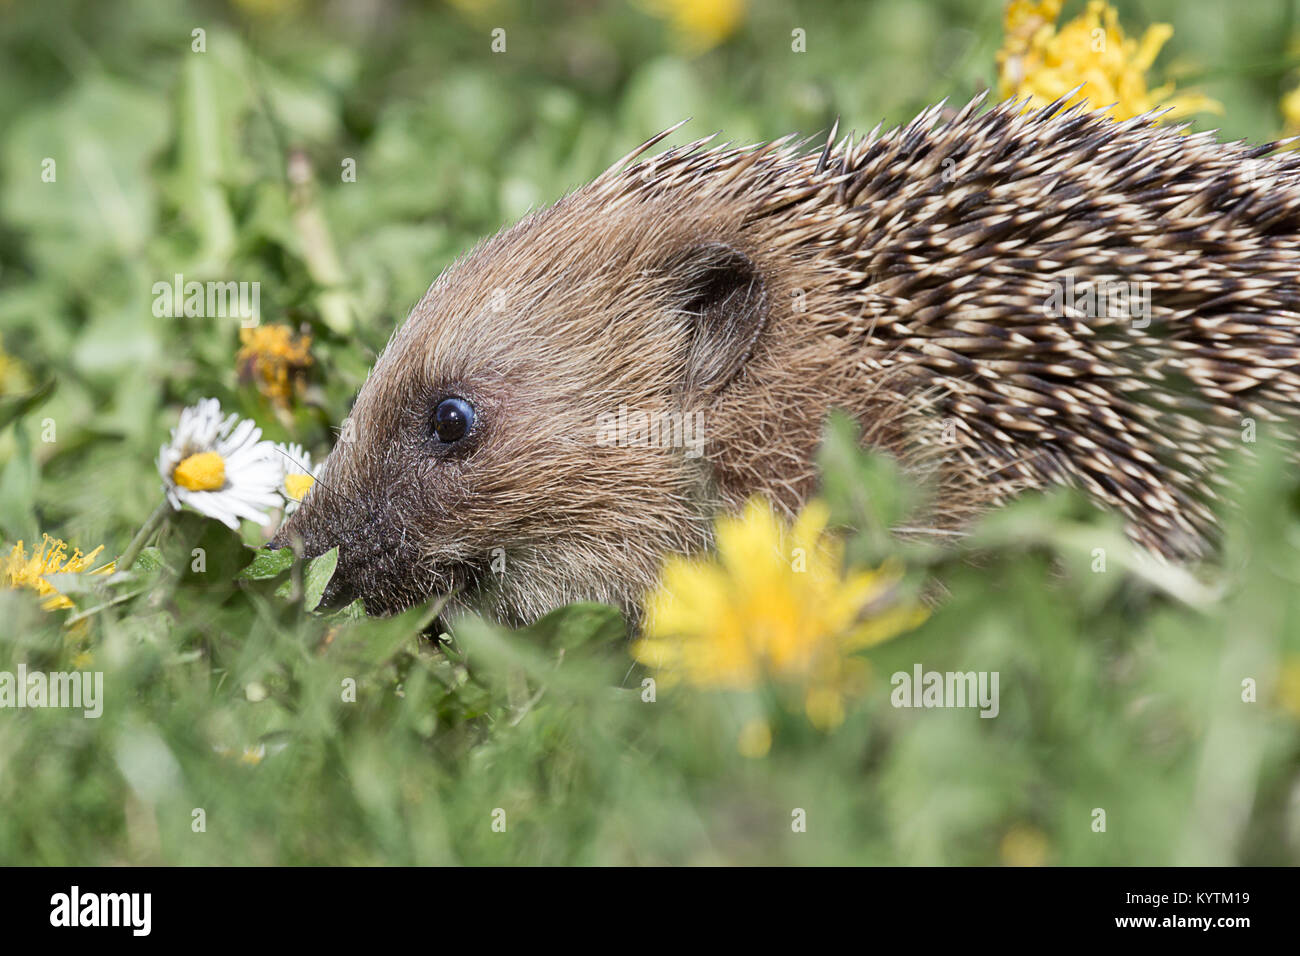 Eine enge Seite Profil ansehen Bild einer jungen Igel Verwurzelung im Gras zwischen den Blumen auf der Suche nach Essen Stockfoto